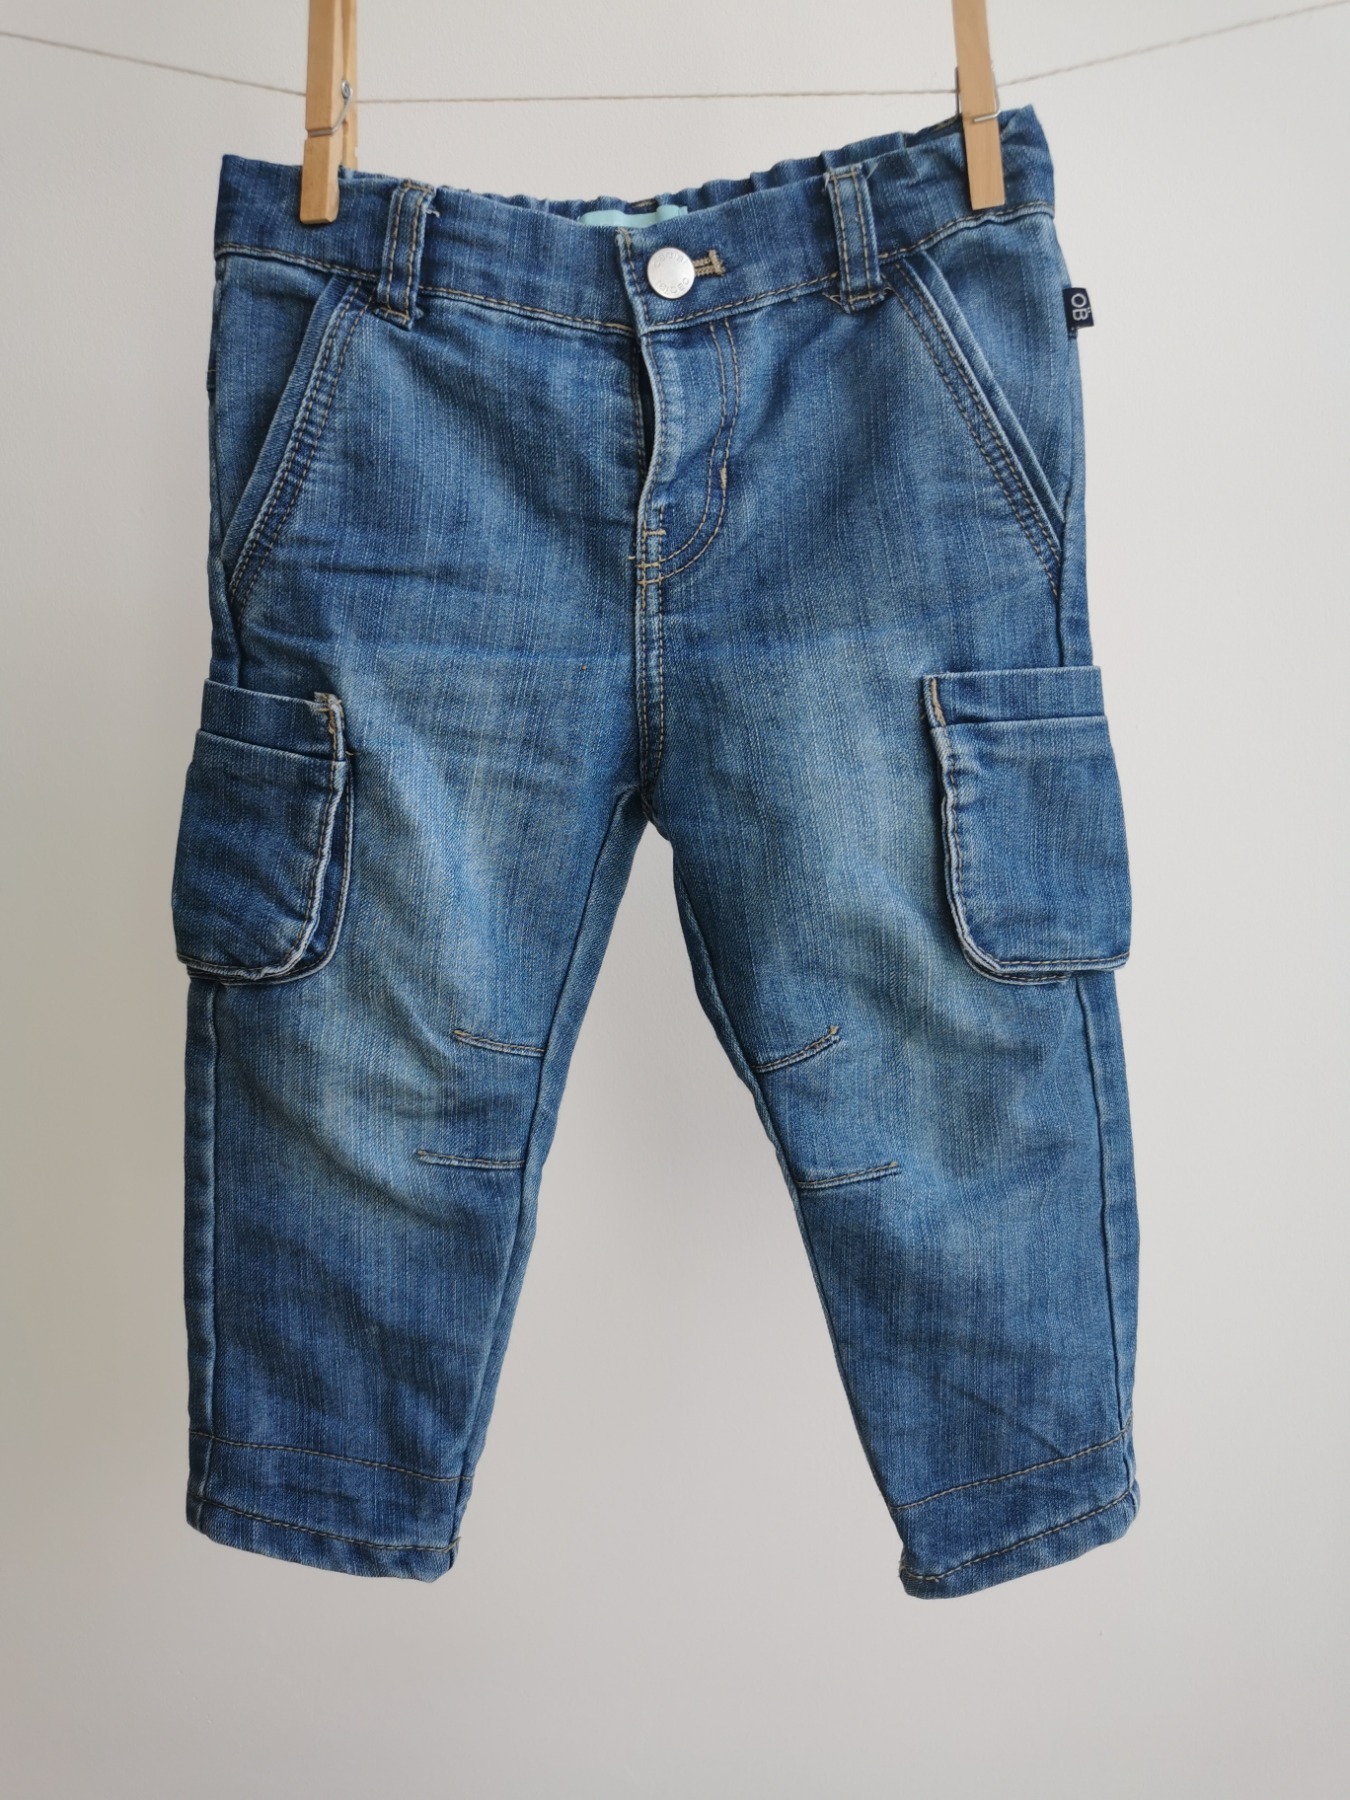 Jeans mit Taschen - Größe 80